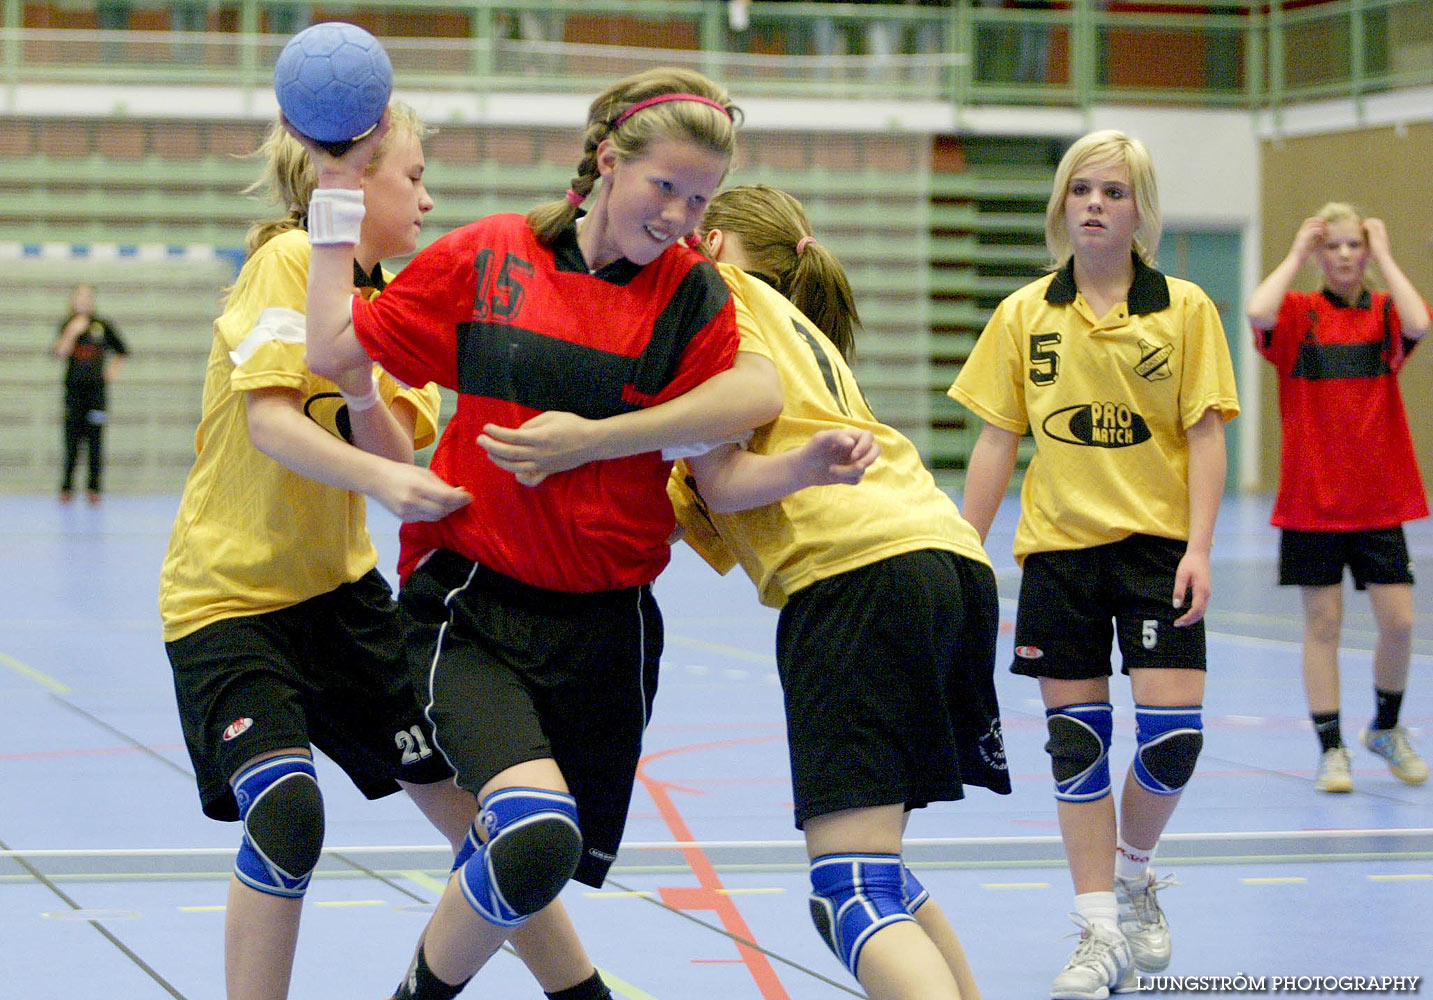 Skadevi Handbollscup 2005 Fredag,mix,Arena Skövde,Skövde,Sverige,Handboll,,2005,141378